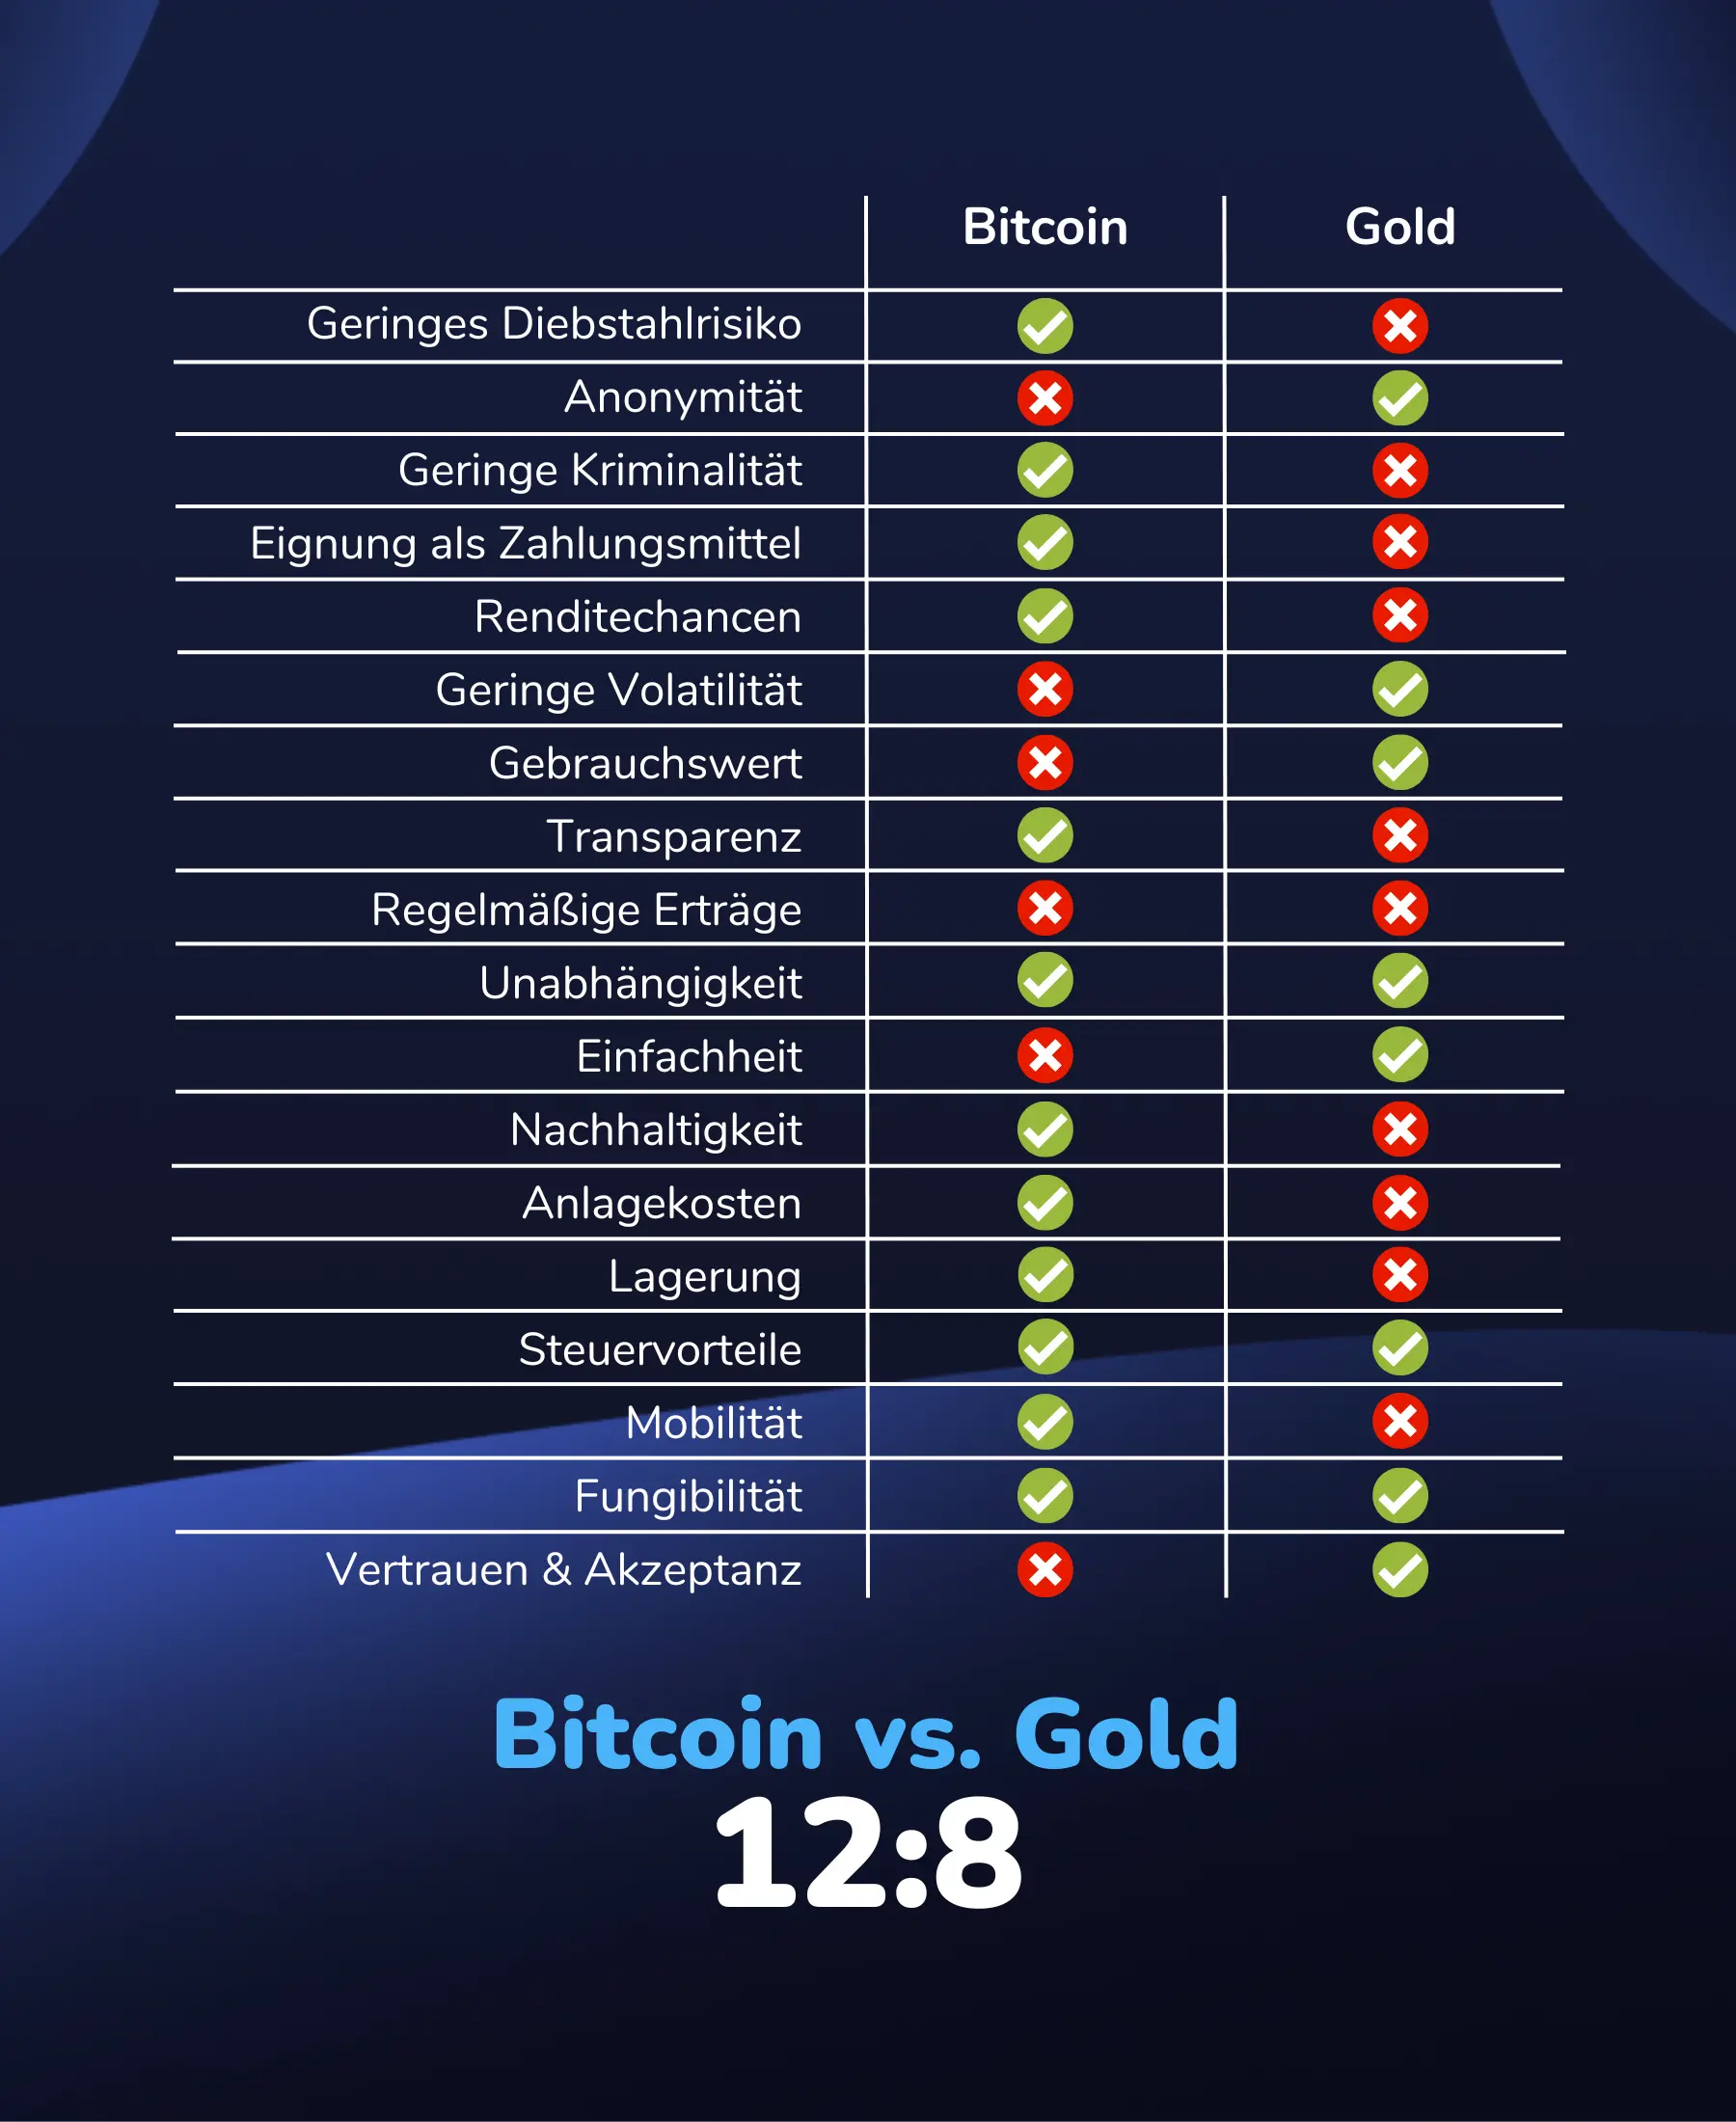 Bitcoin gewinnt in unserem Vergleich mit Gold 12:8 in Punkten